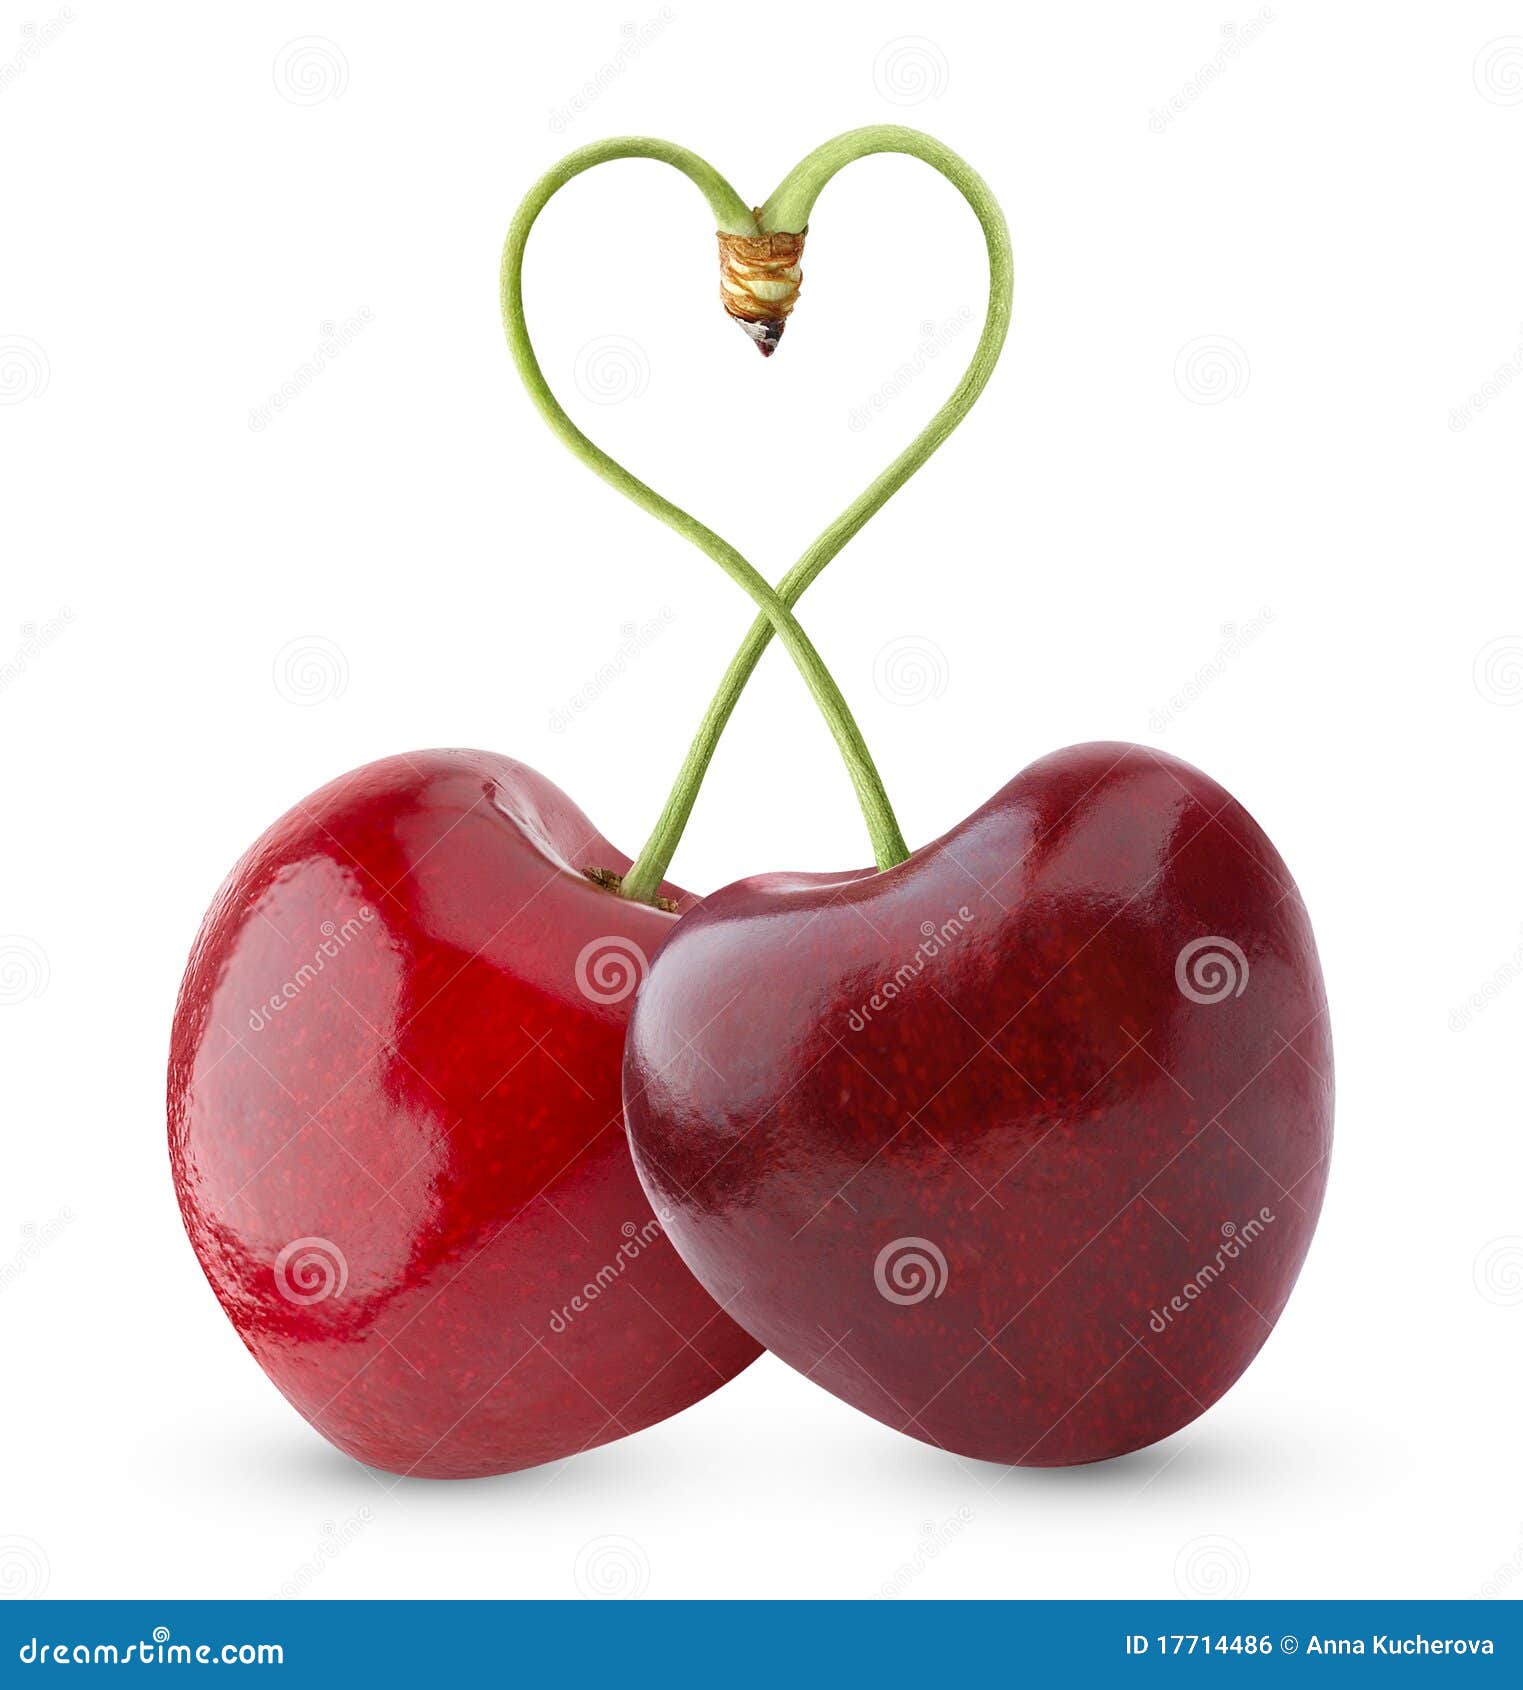 heart-d sweet cherry